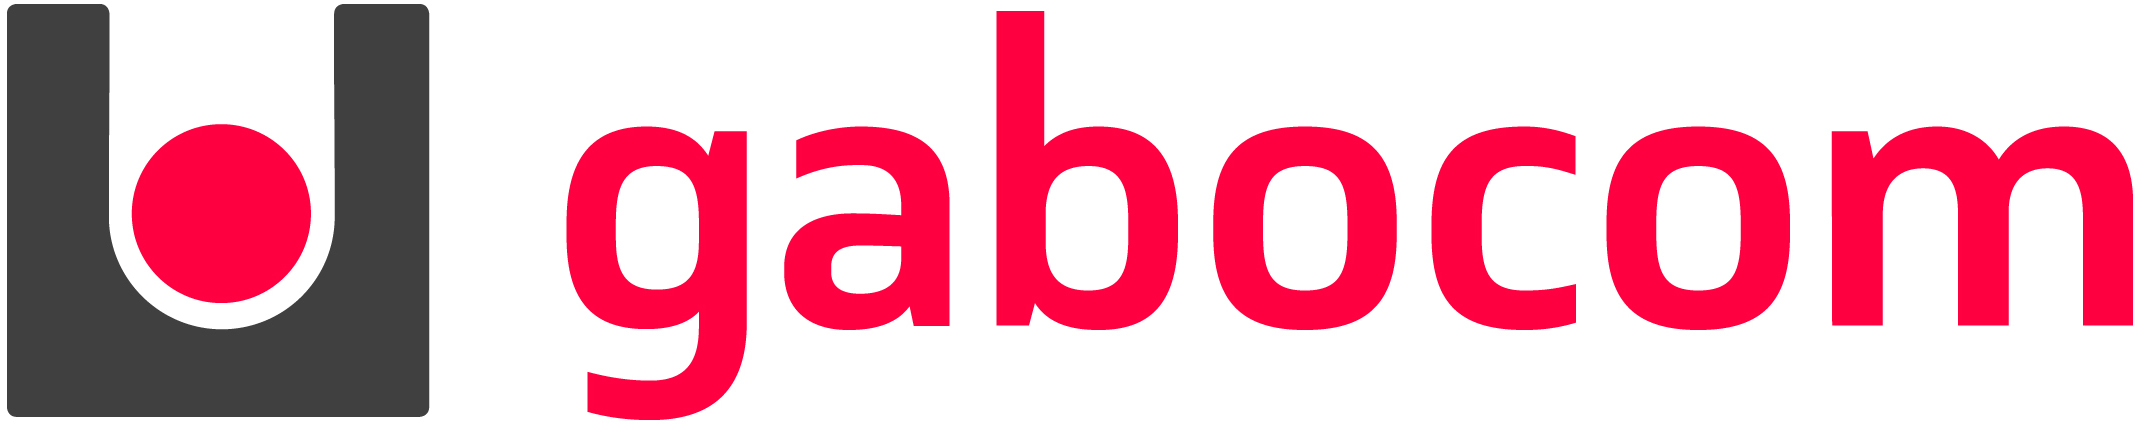 gabocom Logo 4C